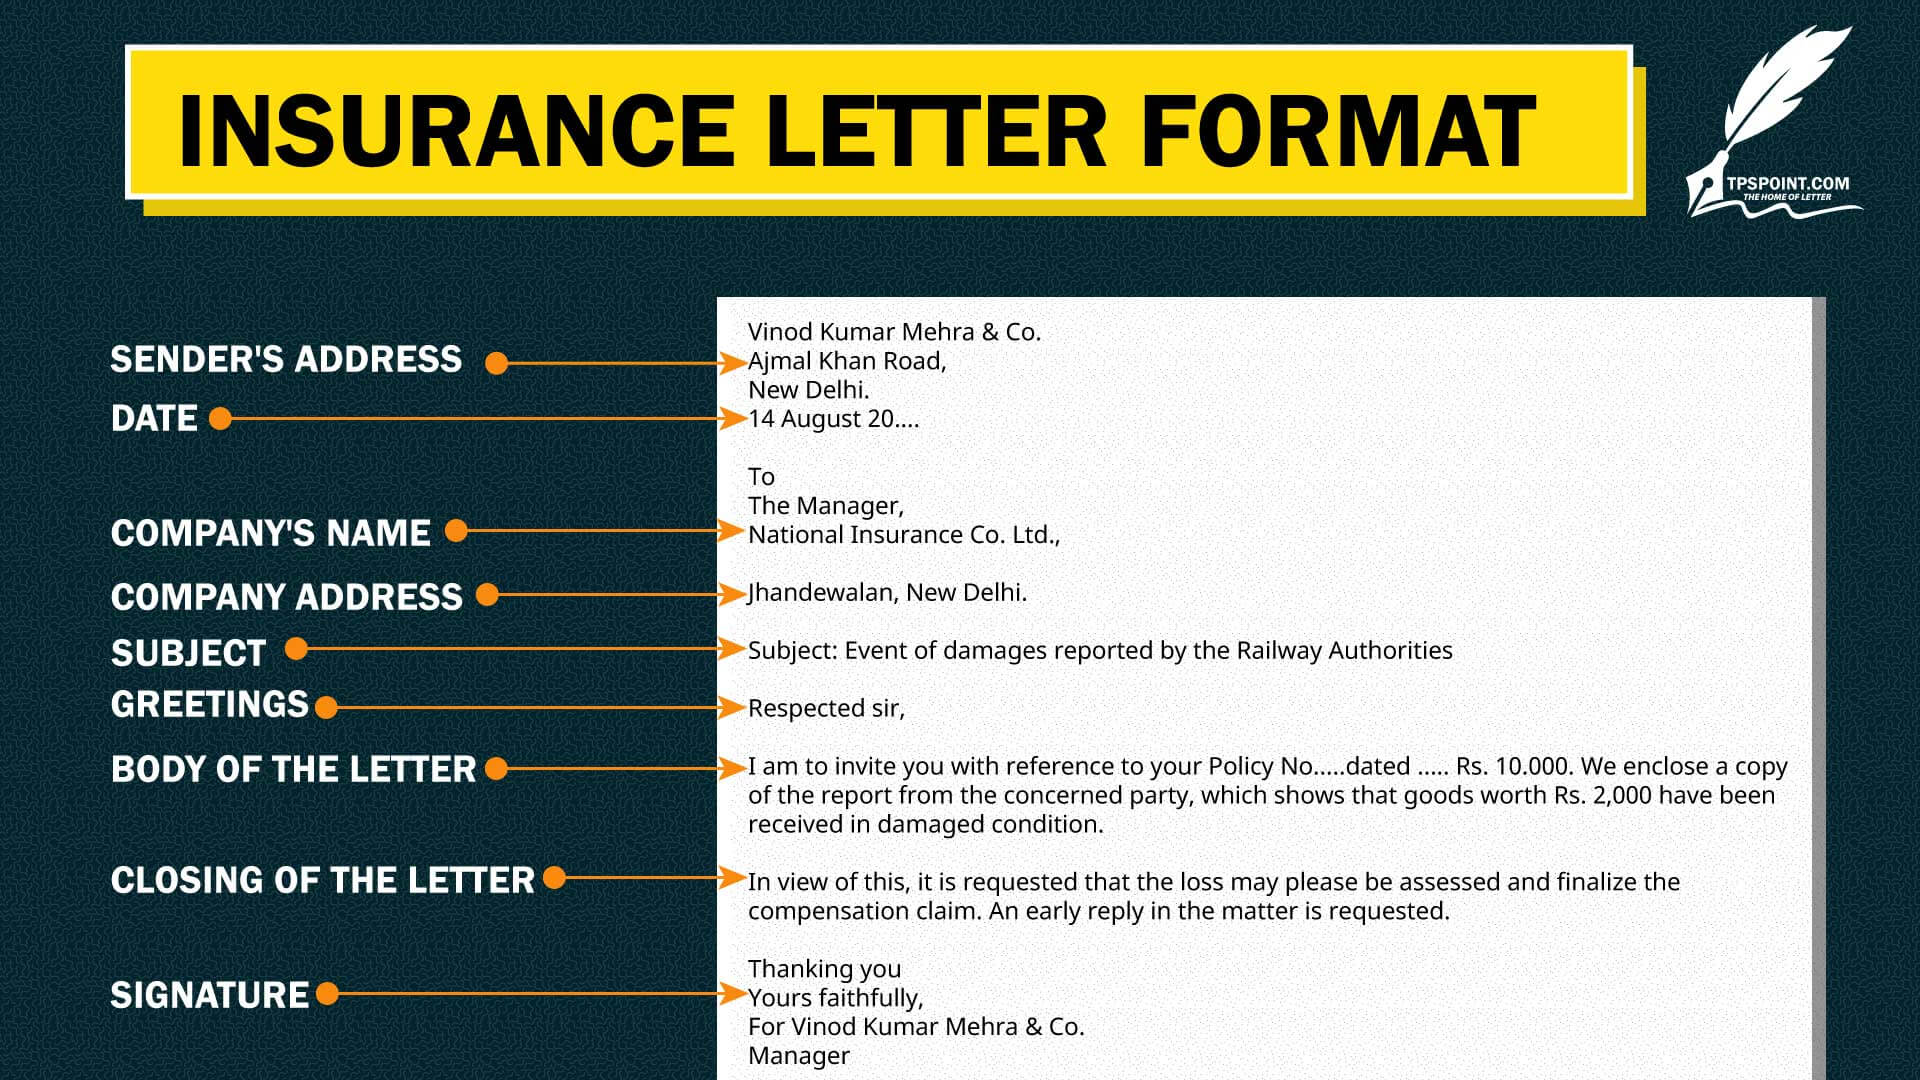 Insurance letter format